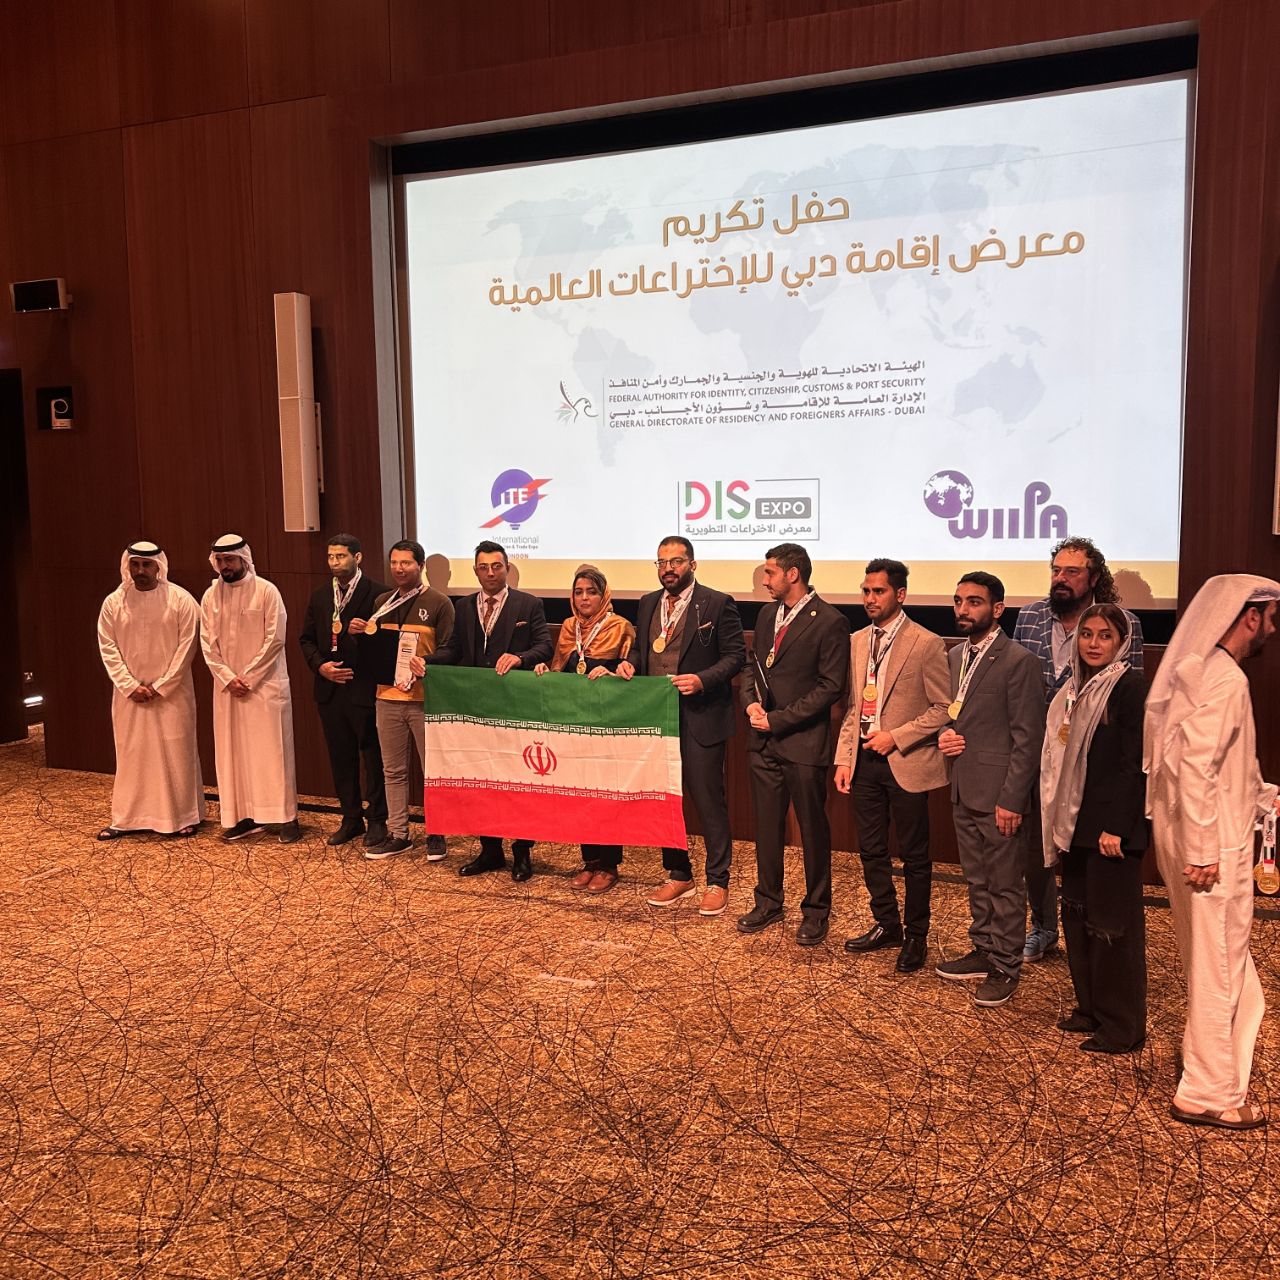 نمایشگاه بین المللی اختراعات دبي "امارات متحده عربي" (DIS)